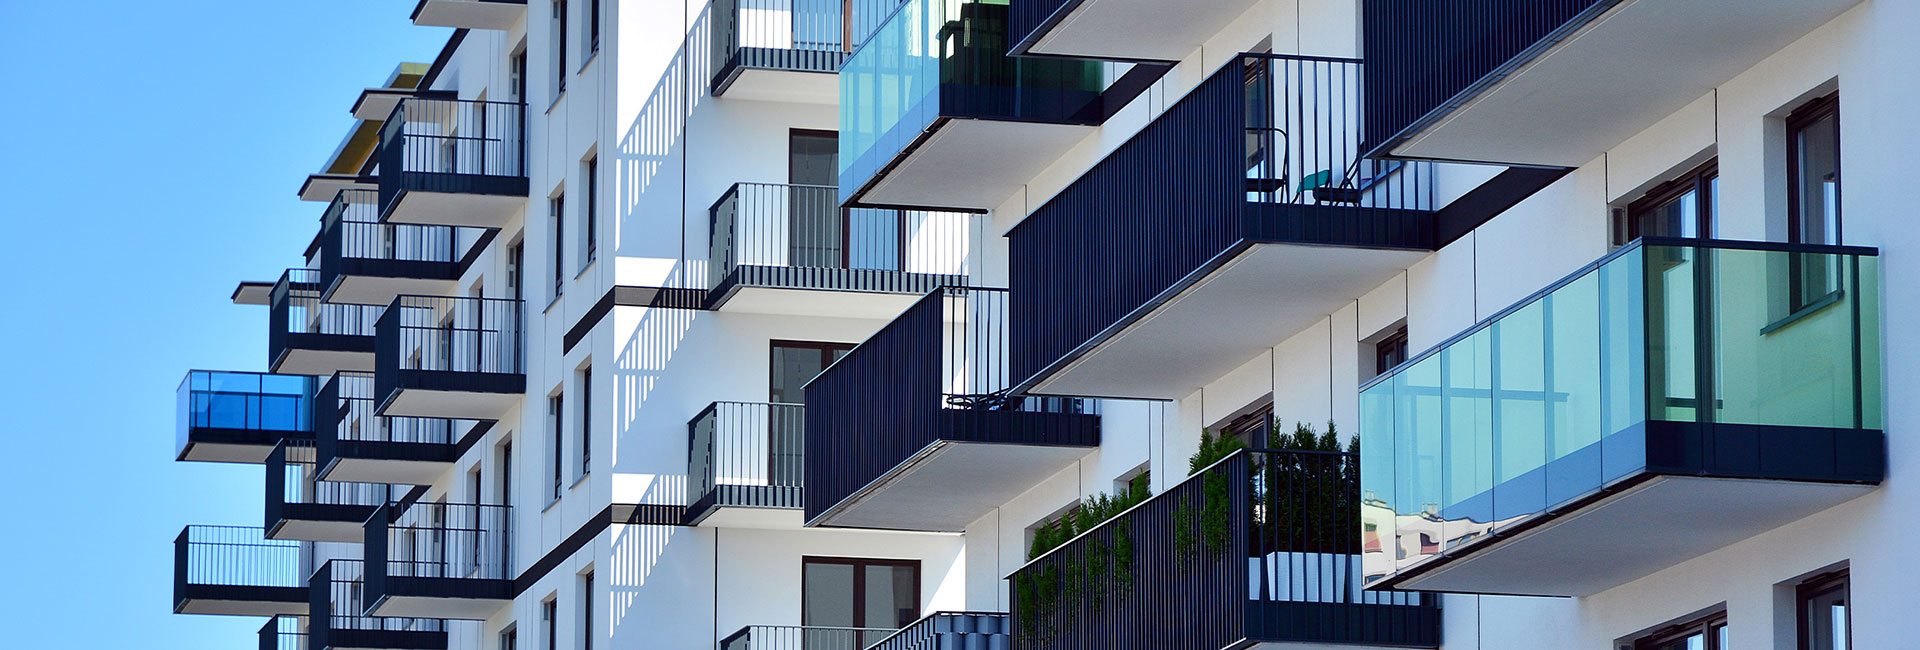 Chuyển đổi số trong ngành bất động sản: Xu hướng và giải pháp thực hiện